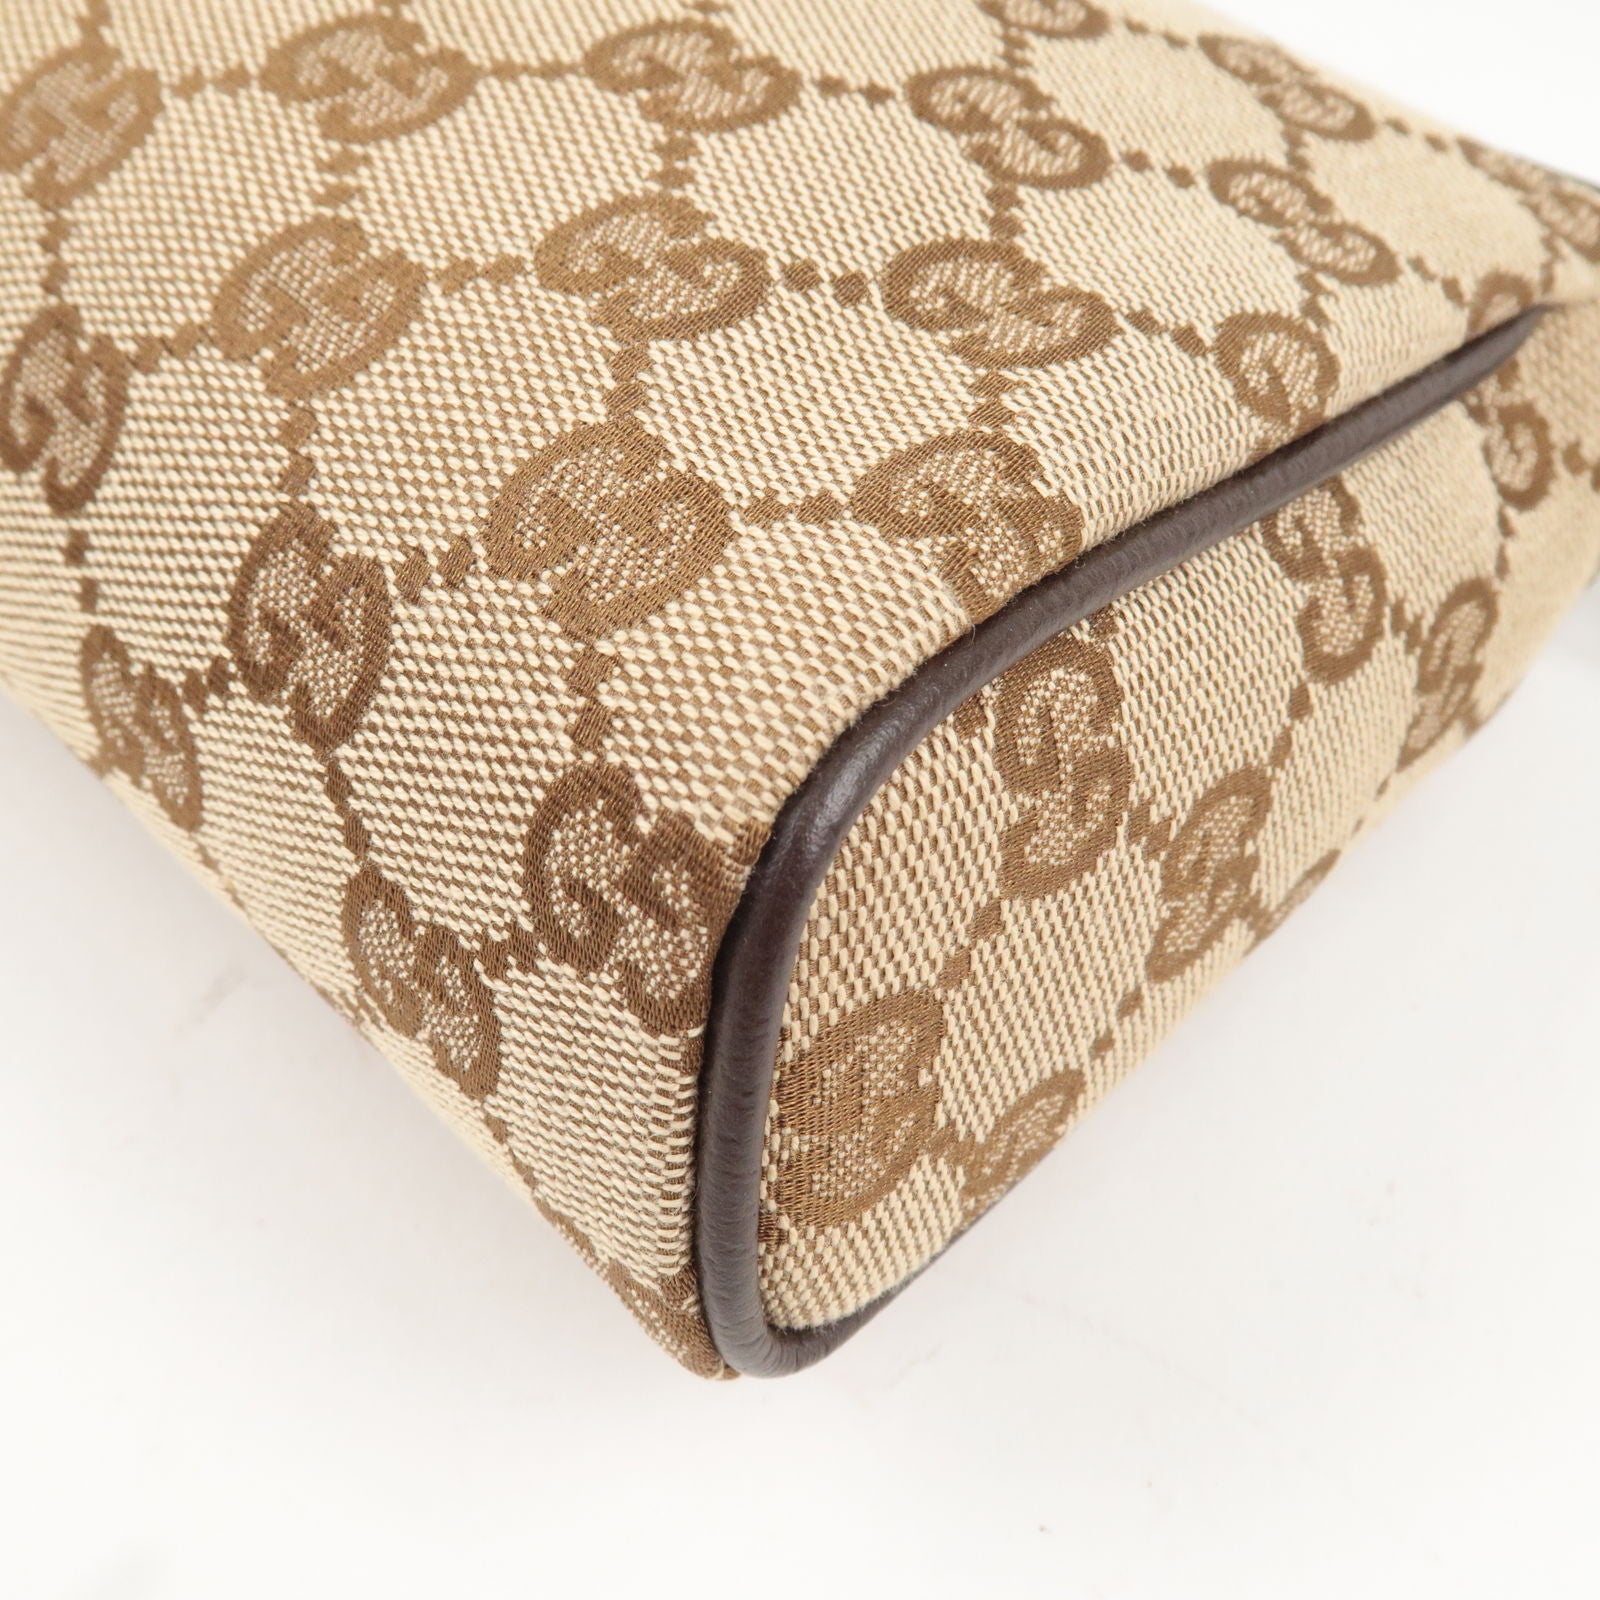 Pre-order] GUCCI Vintage Monogram Tote Bag (Beige / Gold), Luxury